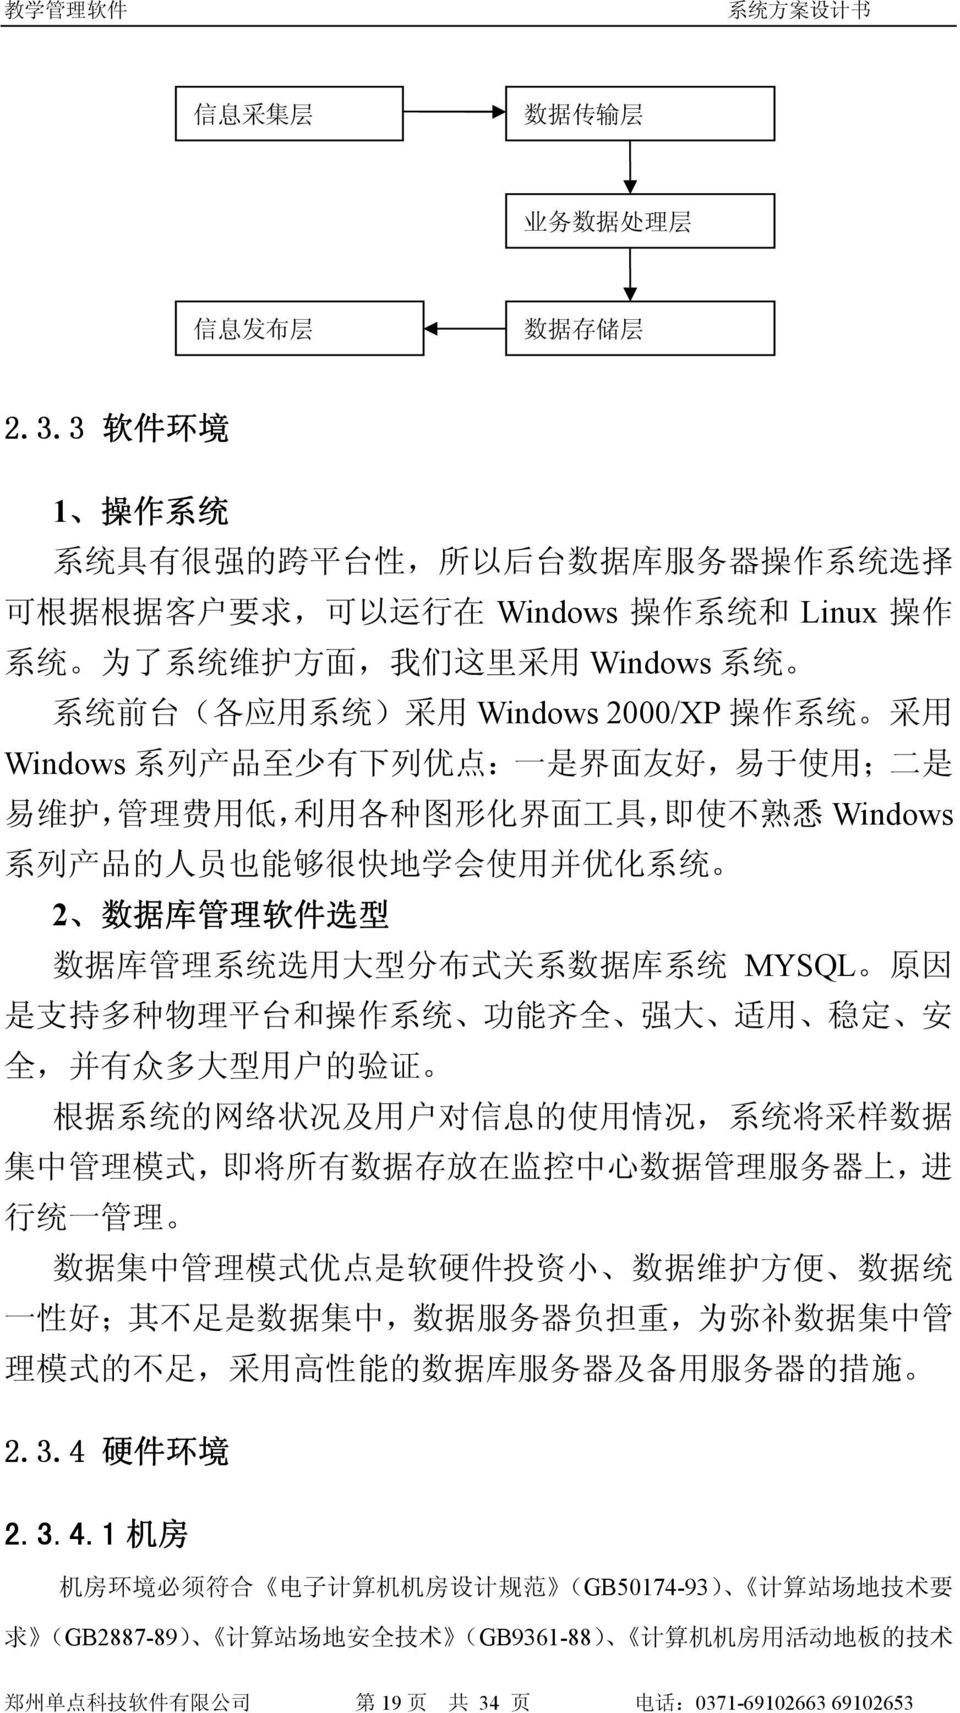 采 用 Windows 2000/XP 操 作 系 统 采 用 Windows 系 列 产 品 至 少 有 下 列 优 点 : 一 是 界 面 友 好, 易 于 使 用 ; 二 是 易 维 护, 管 理 费 用 低, 利 用 各 种 图 形 化 界 面 工 具, 即 使 不 熟 悉 Windows 系 列 产 品 的 人 员 也 能 够 很 快 地 学 会 使 用 并 优 化 系 统 2 数 据